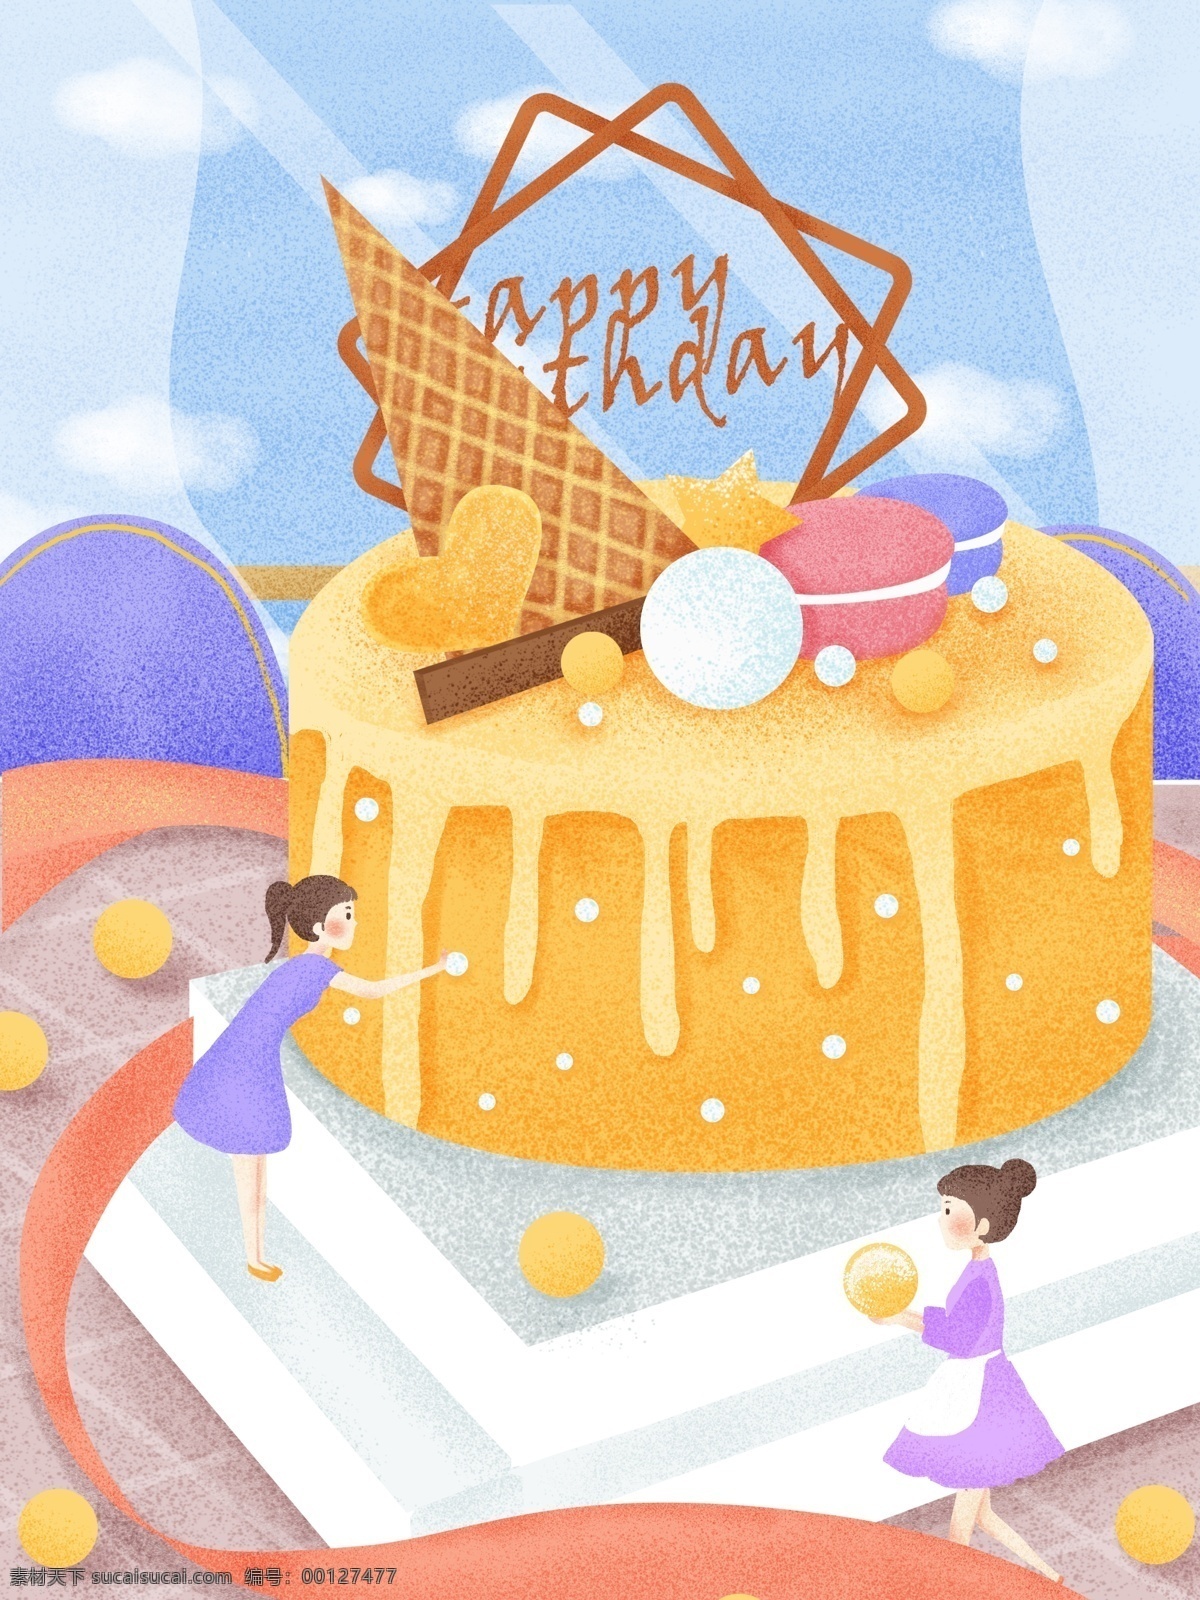 原创 手绘 插画 做 蛋糕 小人儿 创意海报 蓝天 蓝天白云 手绘蛋糕 做蛋糕 小人 生日蛋糕 可爱插画 雪糕 冰淇淋蛋糕 冰淇淋 壁纸 手机用途 桌面 窗户 窗帘 白云